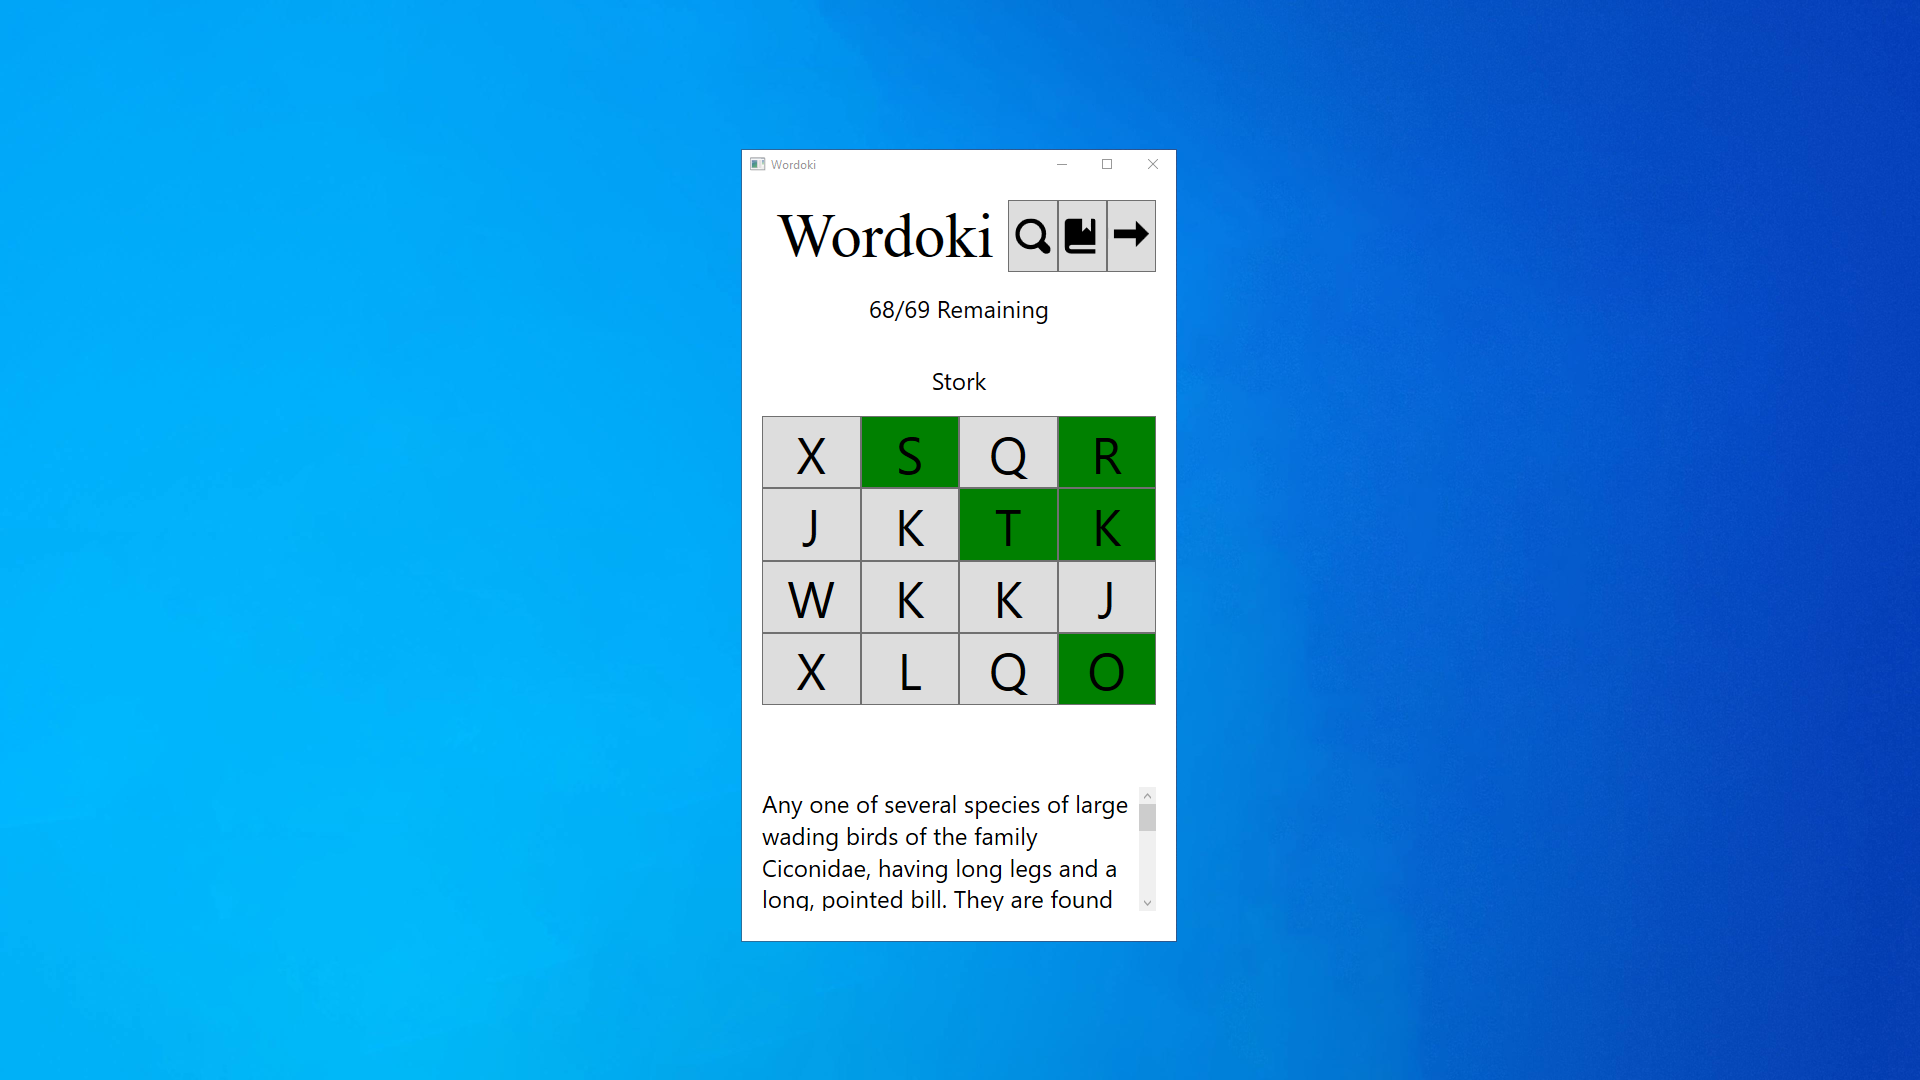 TTLCIC-Wordoki-Puzzle-Game-01